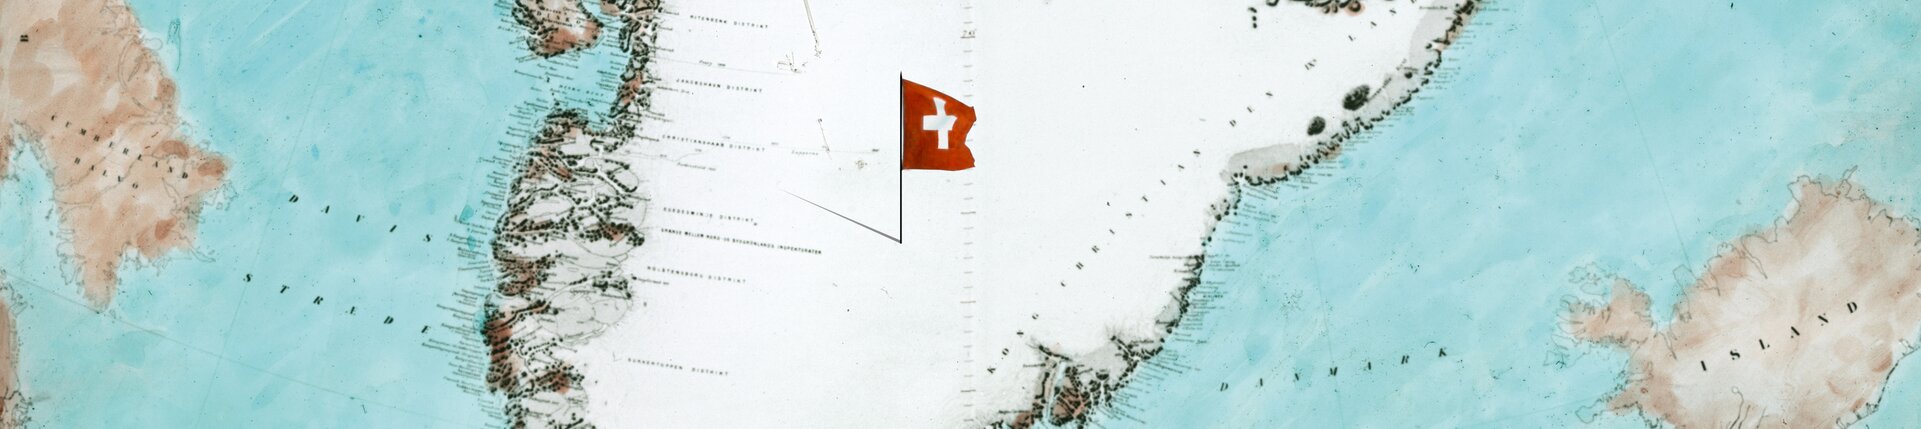 Visuel clé de l'exposition "Groenland 1912" : une carte historique du Groenland avec un petit drapeau suisse. | © Keyvisual der Ausstellung "Grönland 1912" - zu sehen eine alte Grönlandkare mit Schweizerflagge